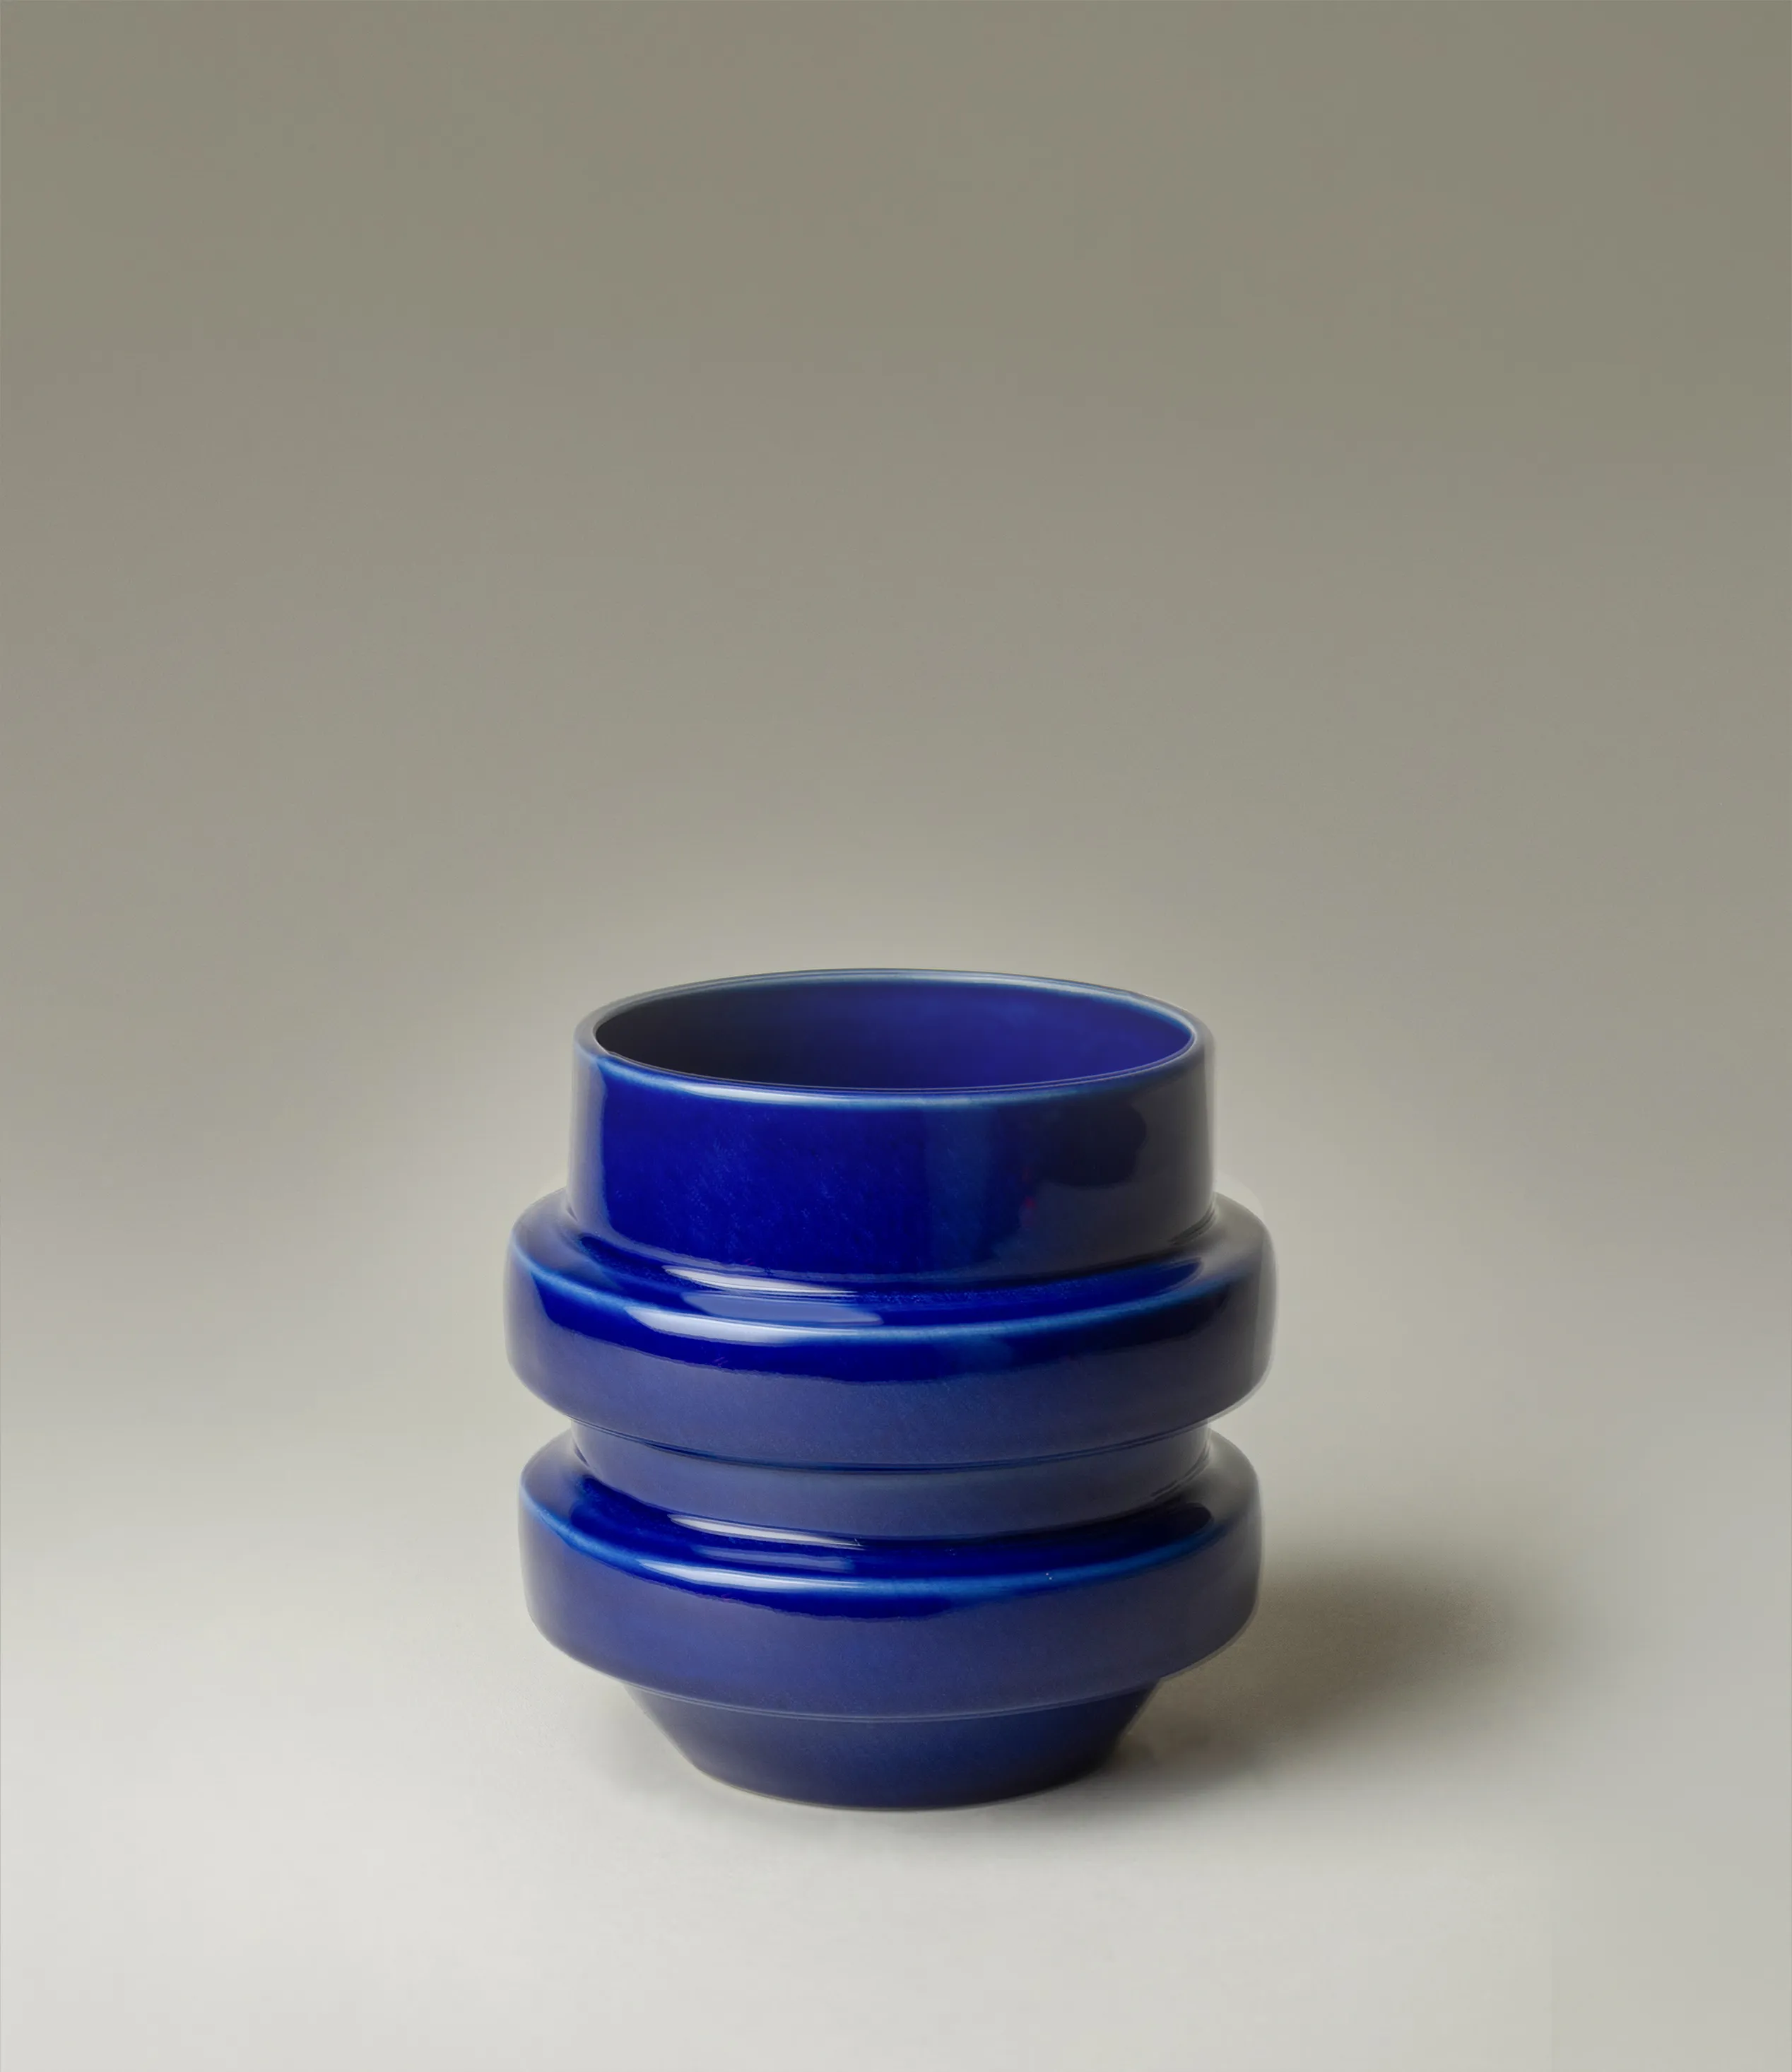 NW Buoy was designed by Nova Casa Atlantica. The planter has a dark blue color with a glossy glaze. 